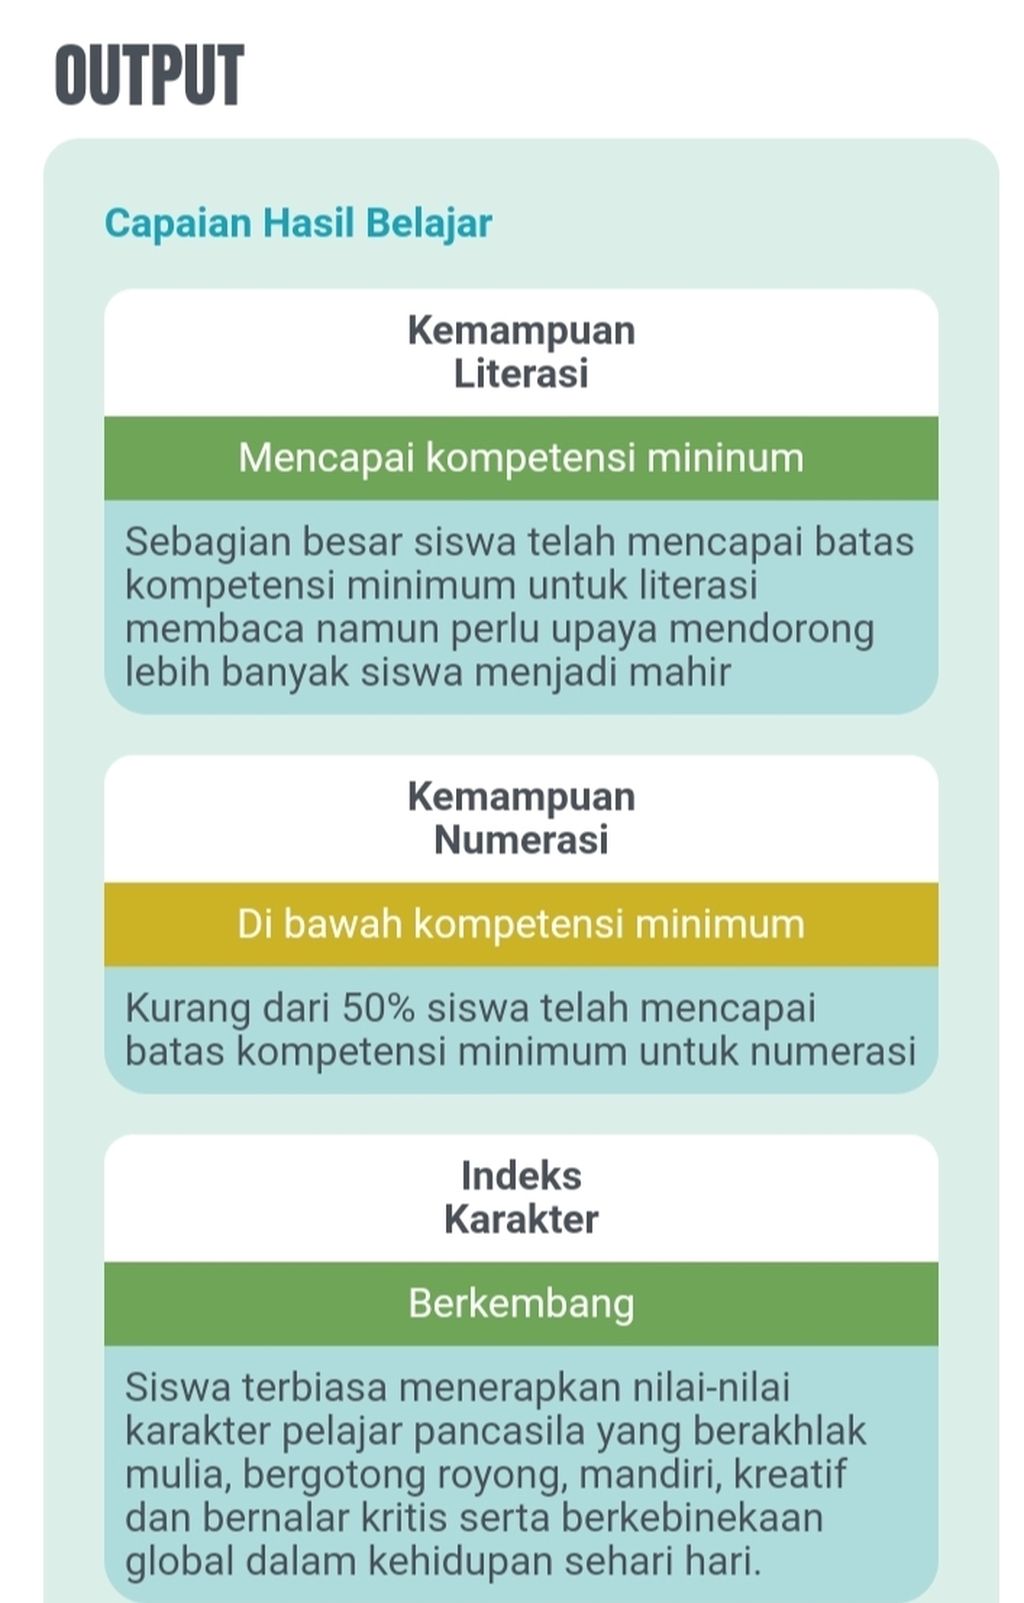 Pencapaian asesmen kompetensi minumum (AKM) siswa SMA/SMK Indonesia Tahun 2021 yang dilakukan Kemendikbudristek.  Asesmen ini untuk mengukur kompetensi literasi, numerasi, dan karakter siswa guna memastikan siswa mendapatkan pembelajaran holistik di sekolah. 